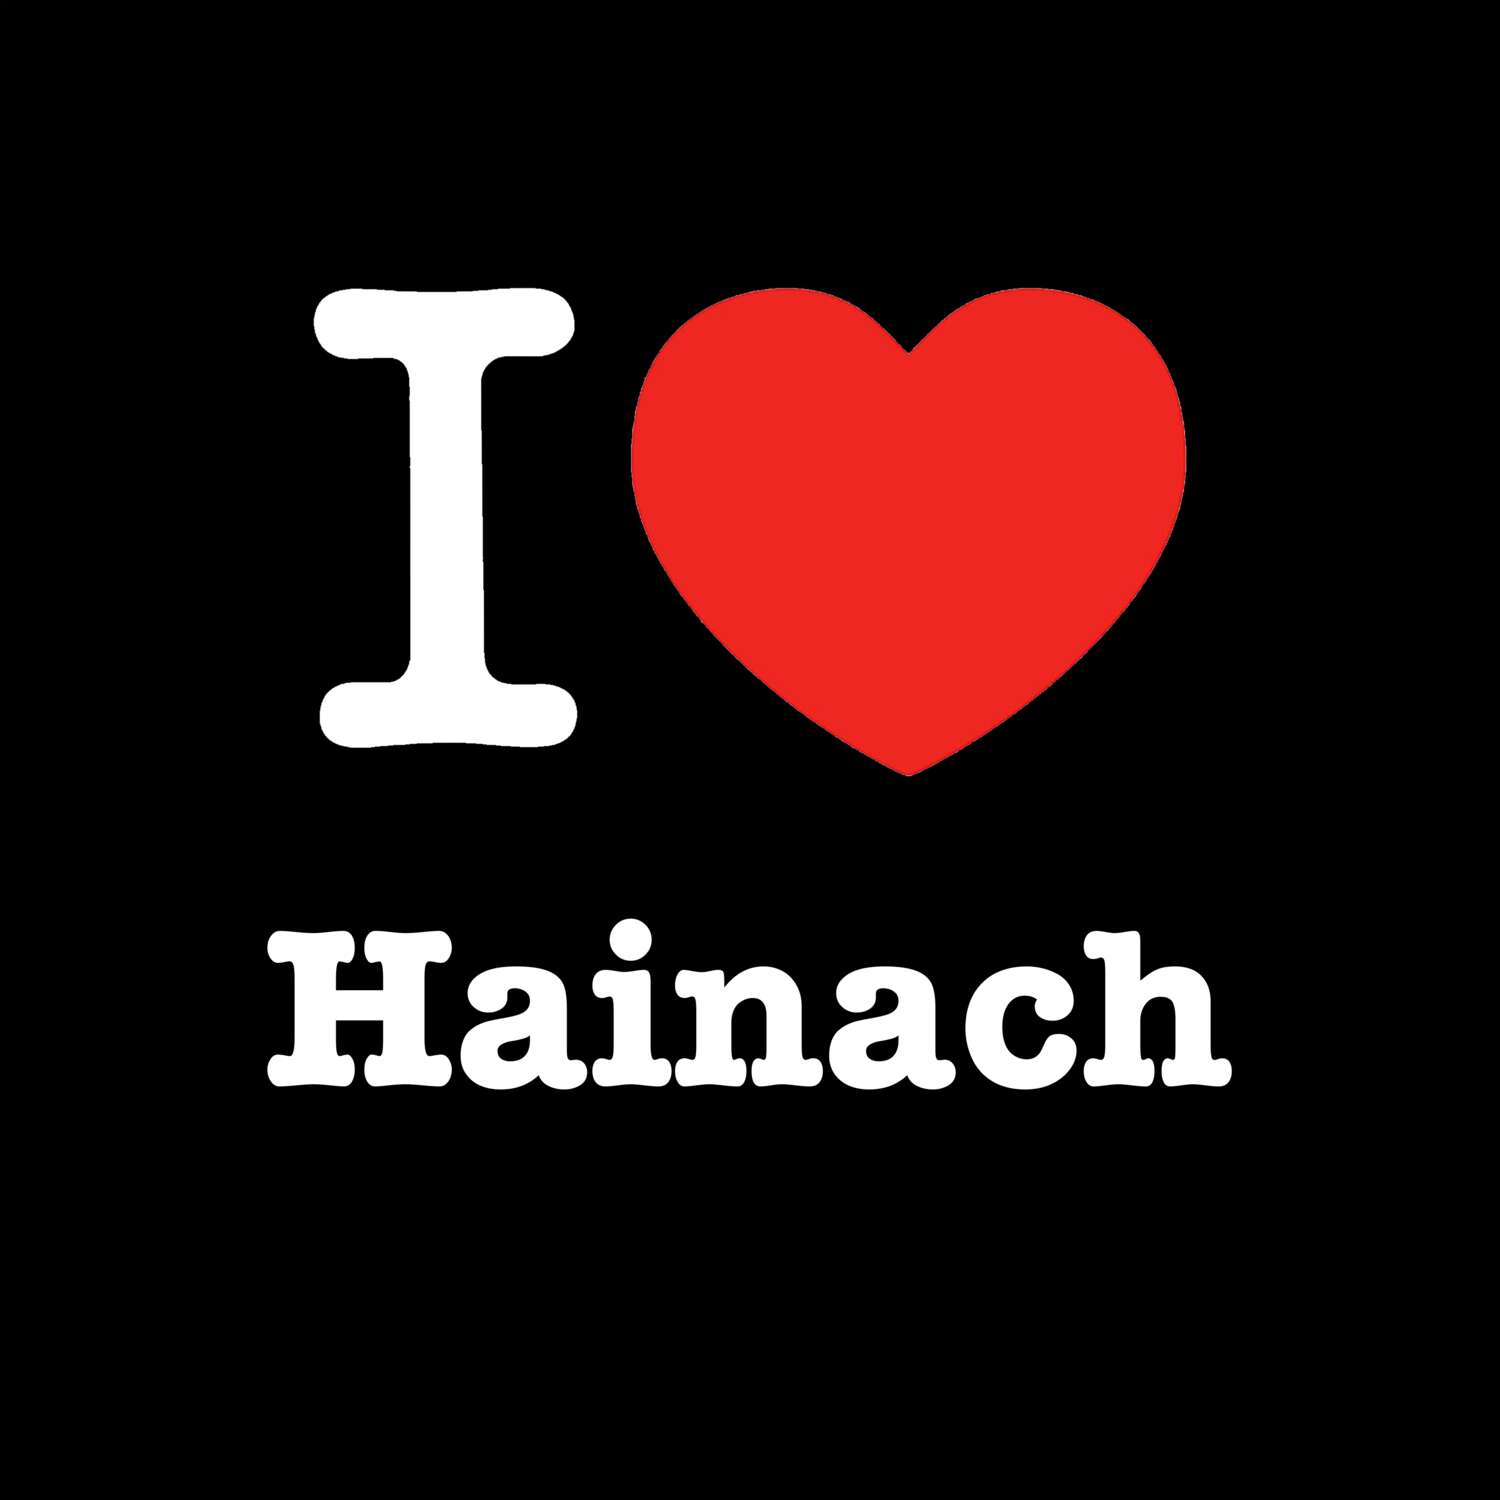 Hainach T-Shirt »I love«